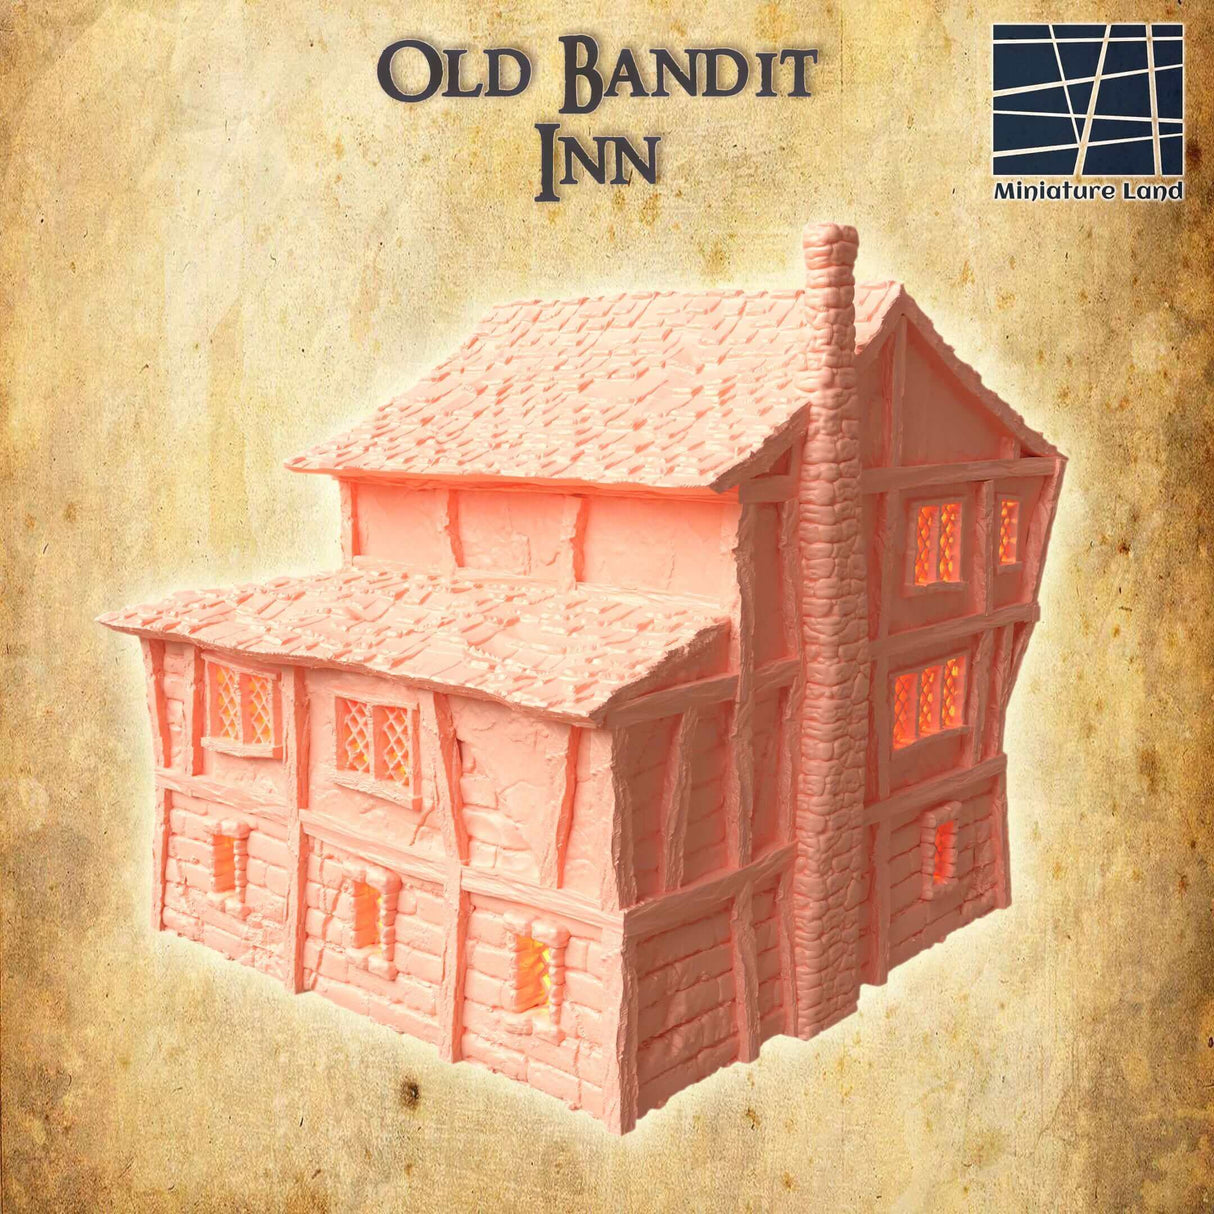 FDM-gedrucktes Altes Bandit Inn von Miniature Land